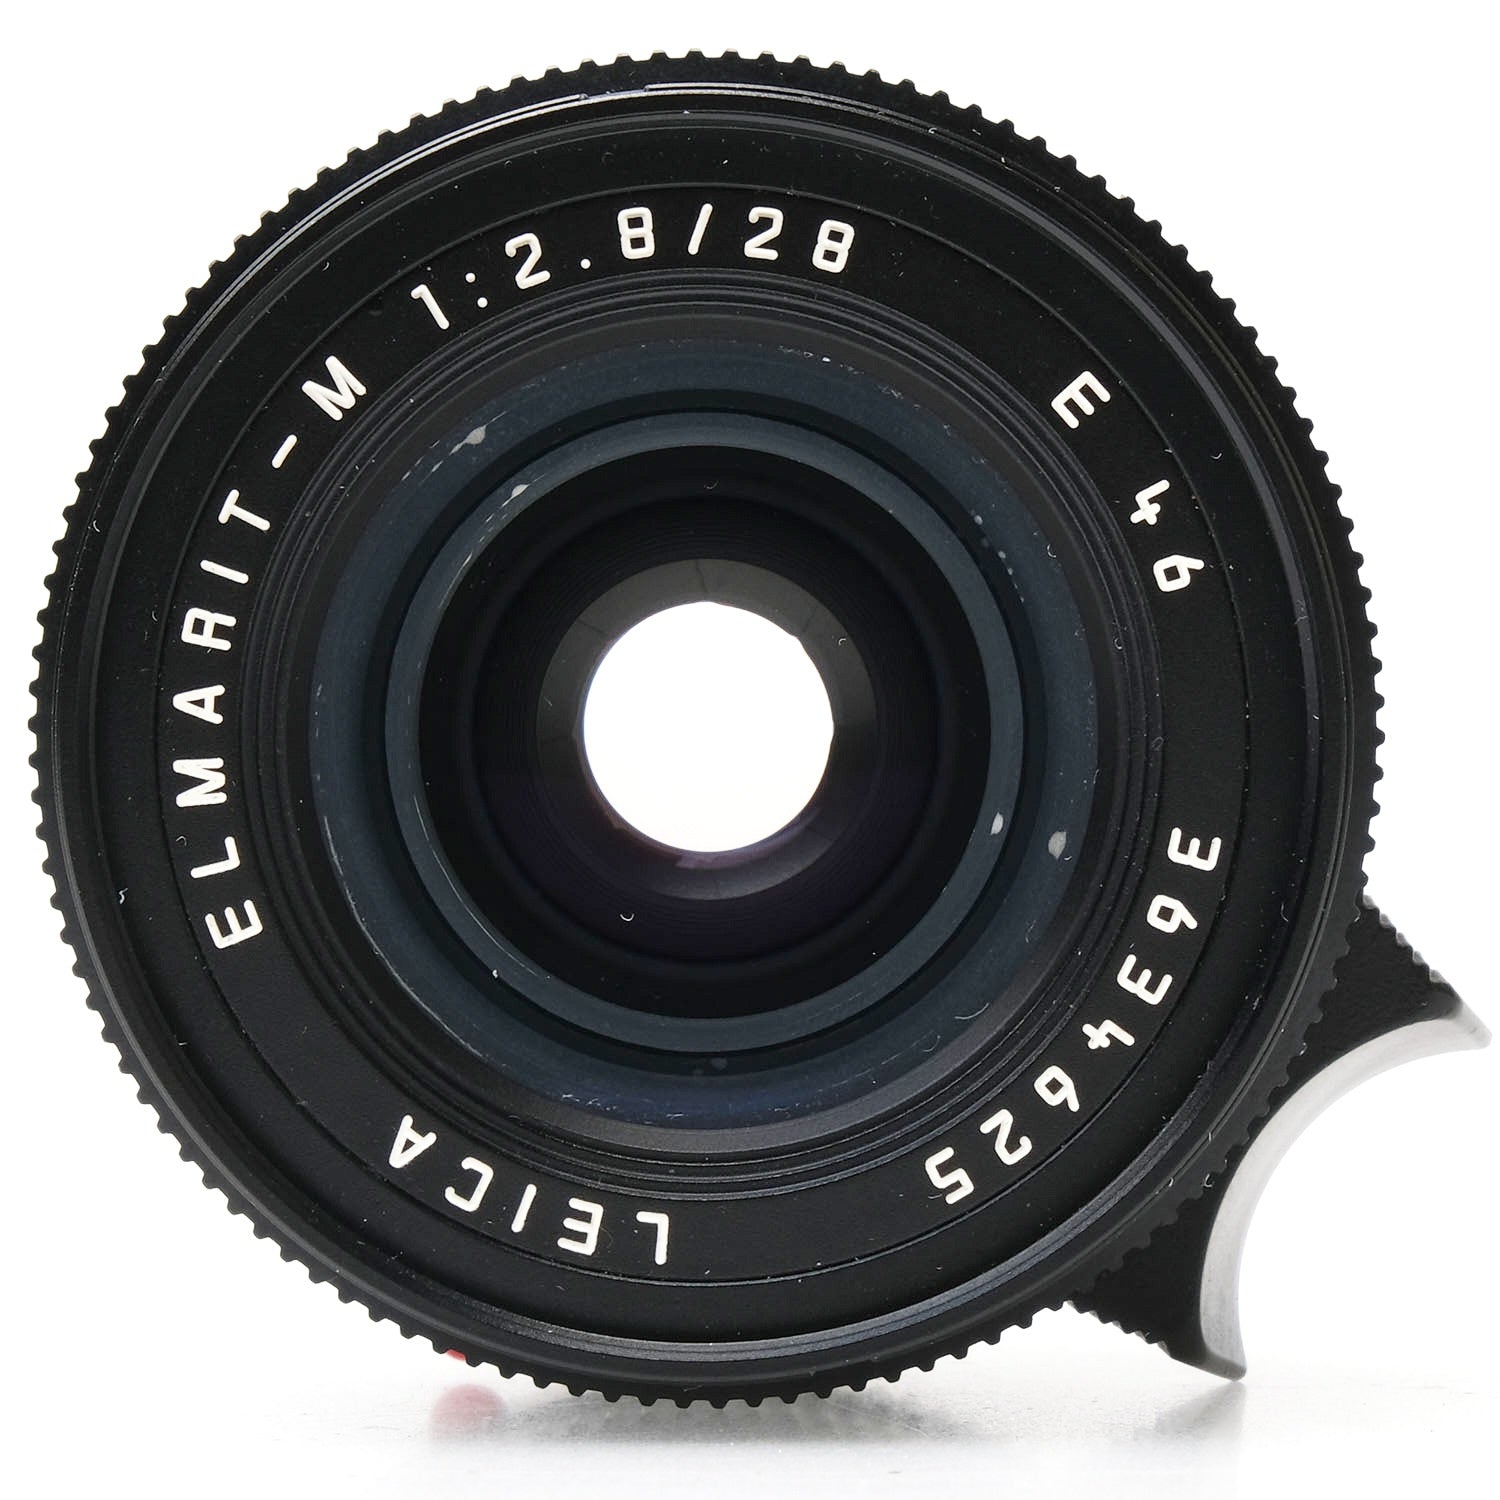 Leica 28mm f2.8 Elmar-M, Black, V4 3634625